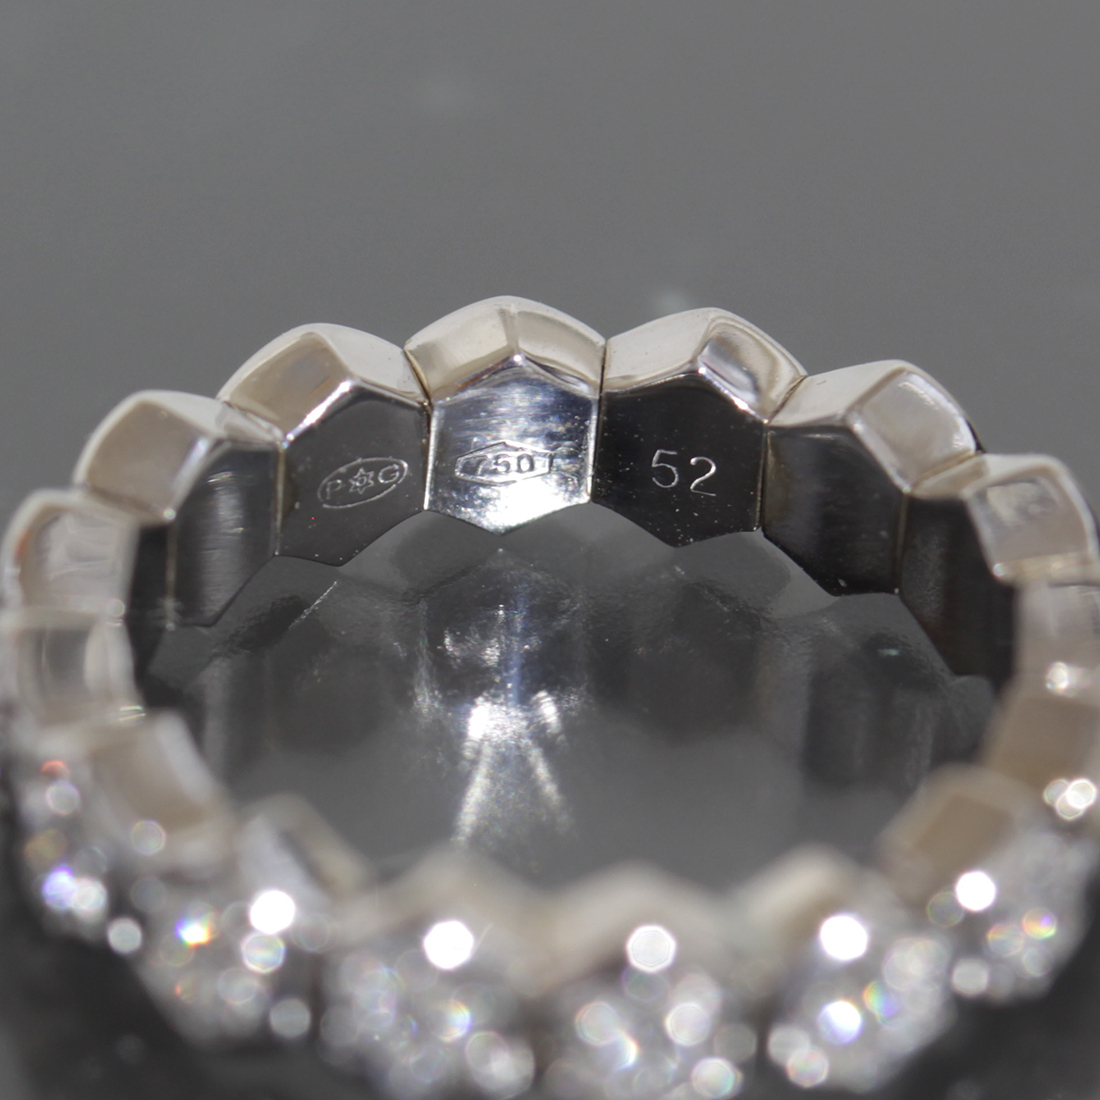 ... ...   полный  бриллиантовый   кольцо   11 номер   K18WG 5.7g● новый товар ... верх ...  обозначение  размер  52  кольцо   PIAGET 750 5541A